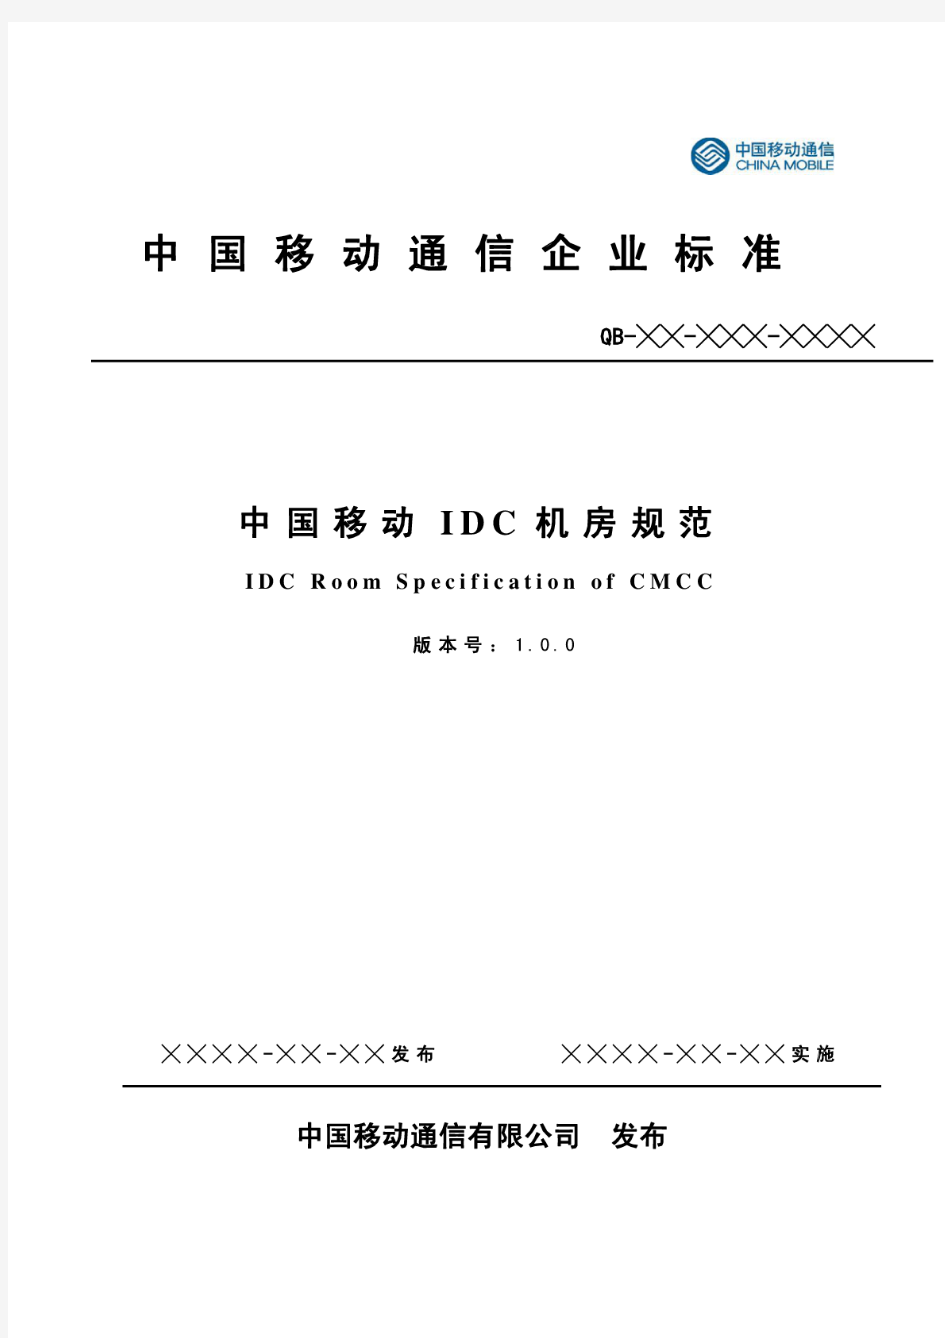 21、V1.0.0 中国移动IDC机房规范